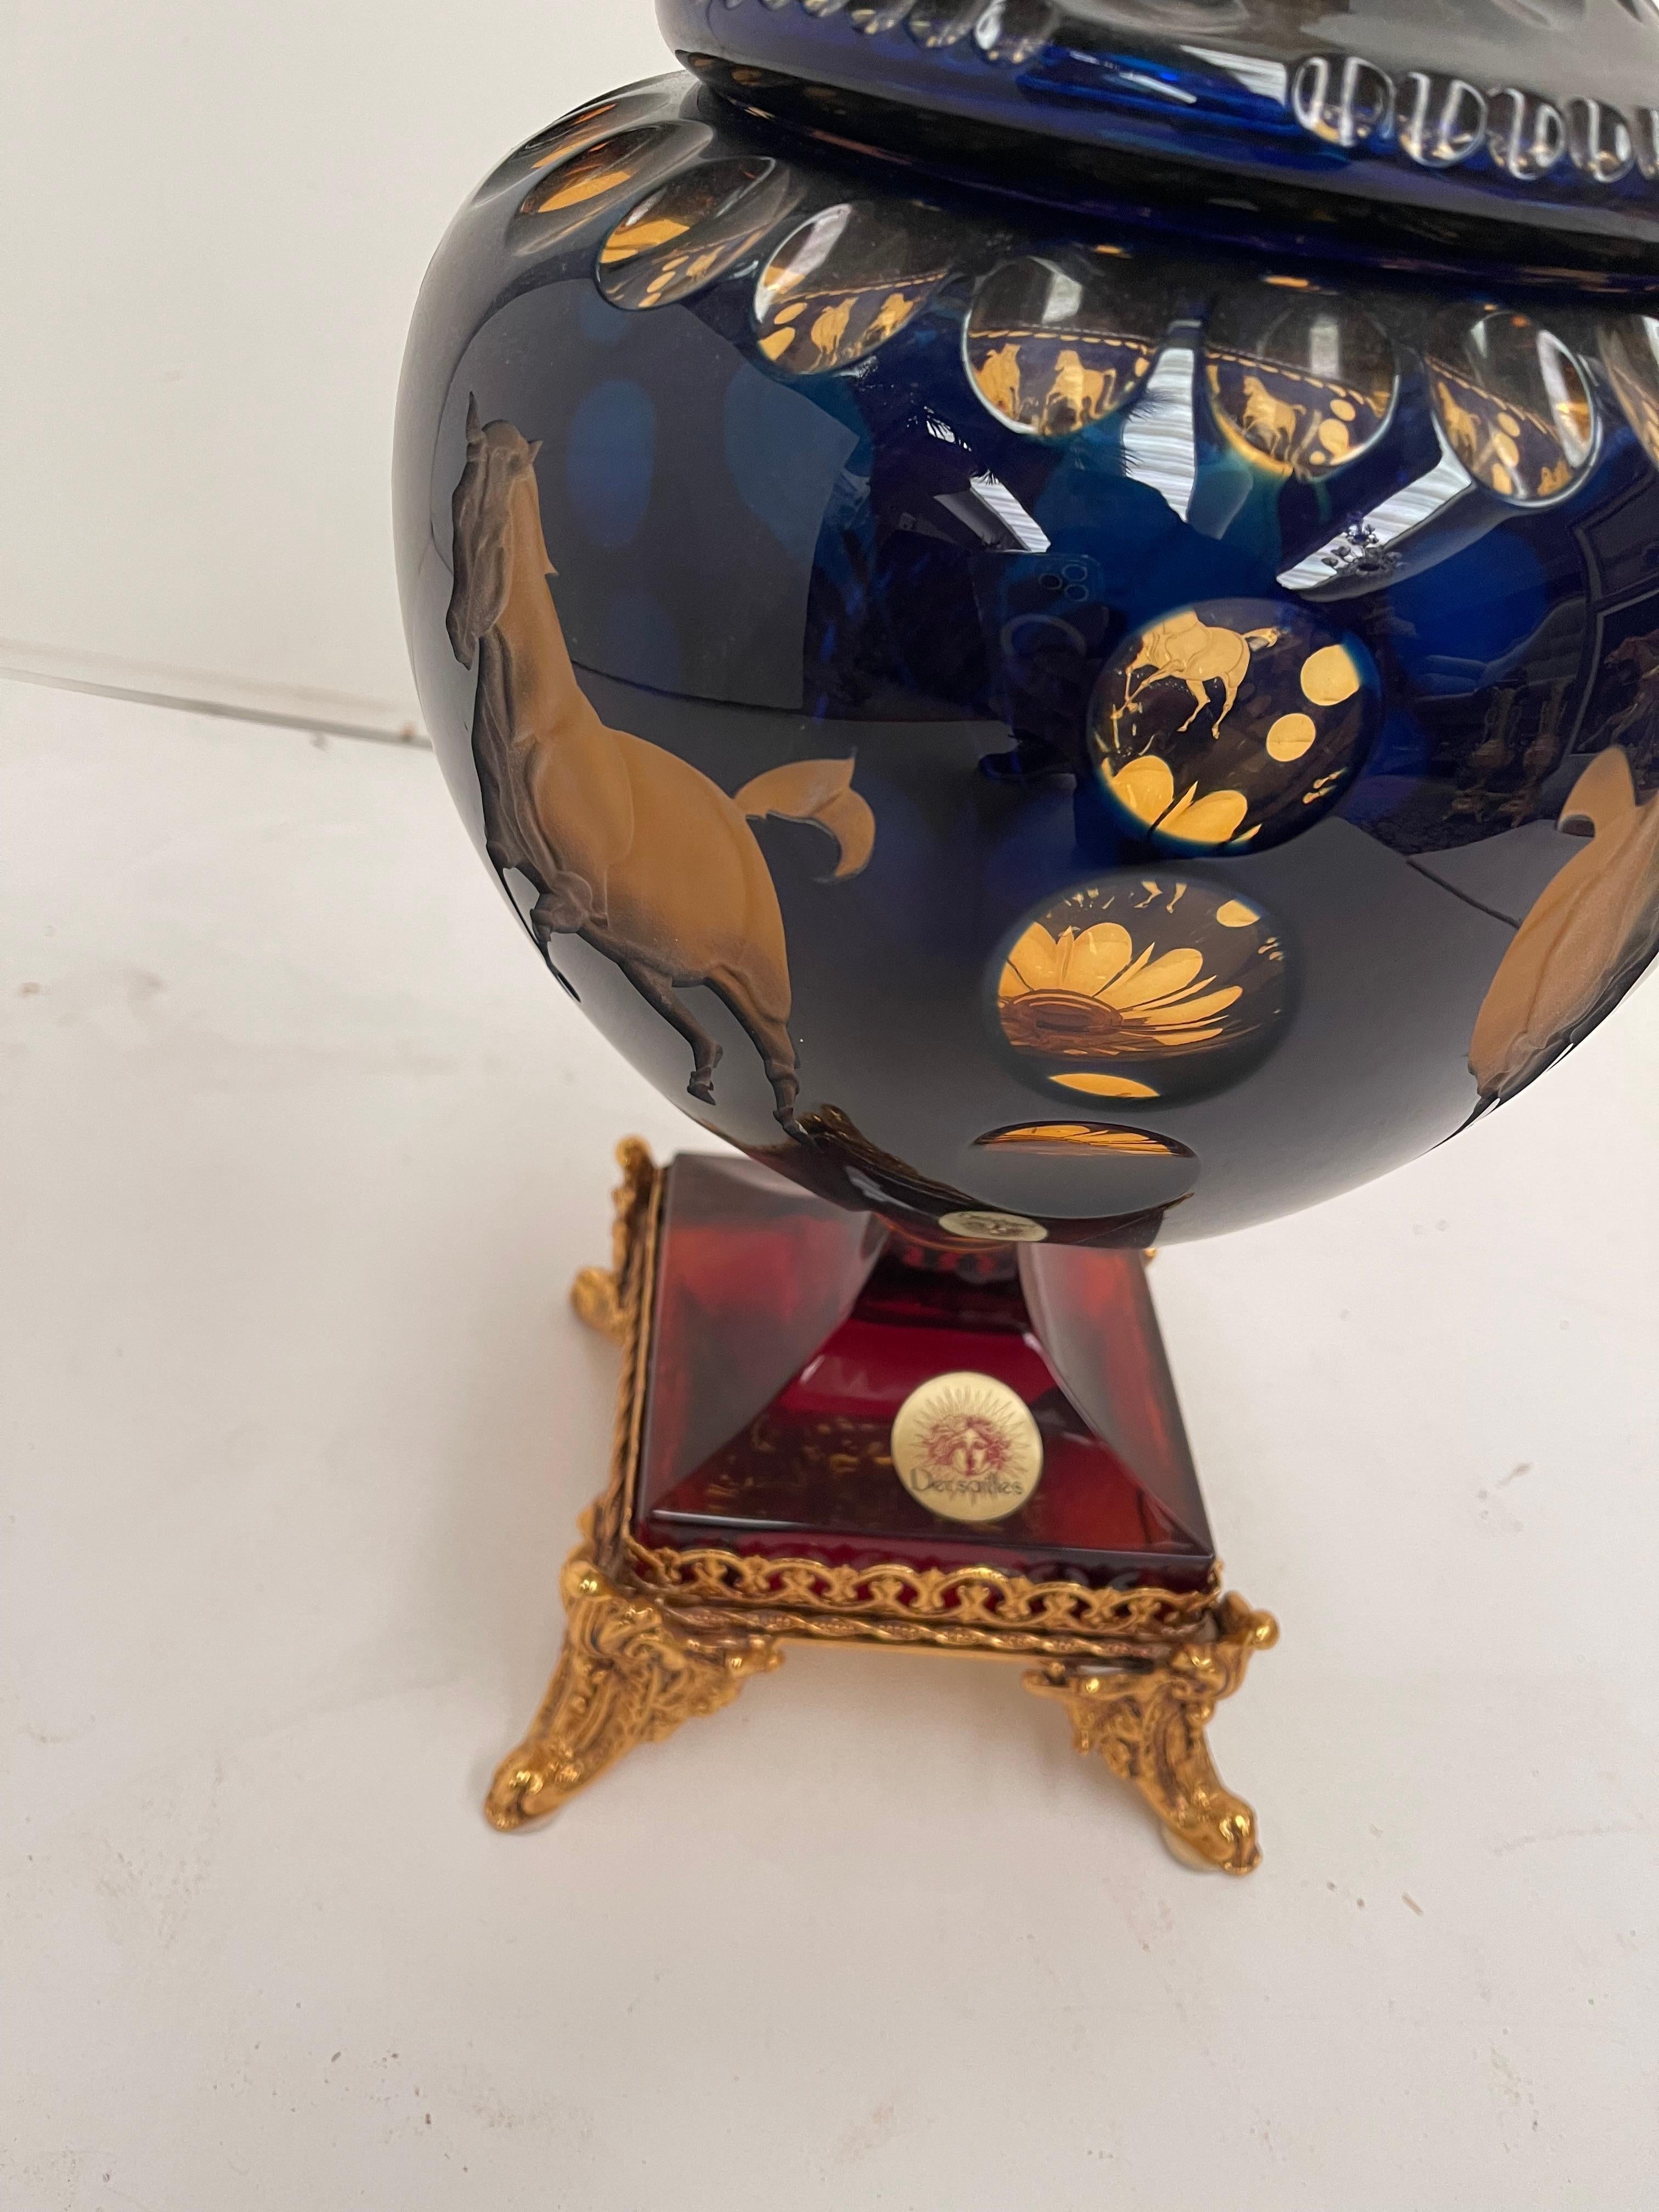 Precioso Cristallo molato a mano con decorazione in bronzo dorato private collection Domenico Rugiano